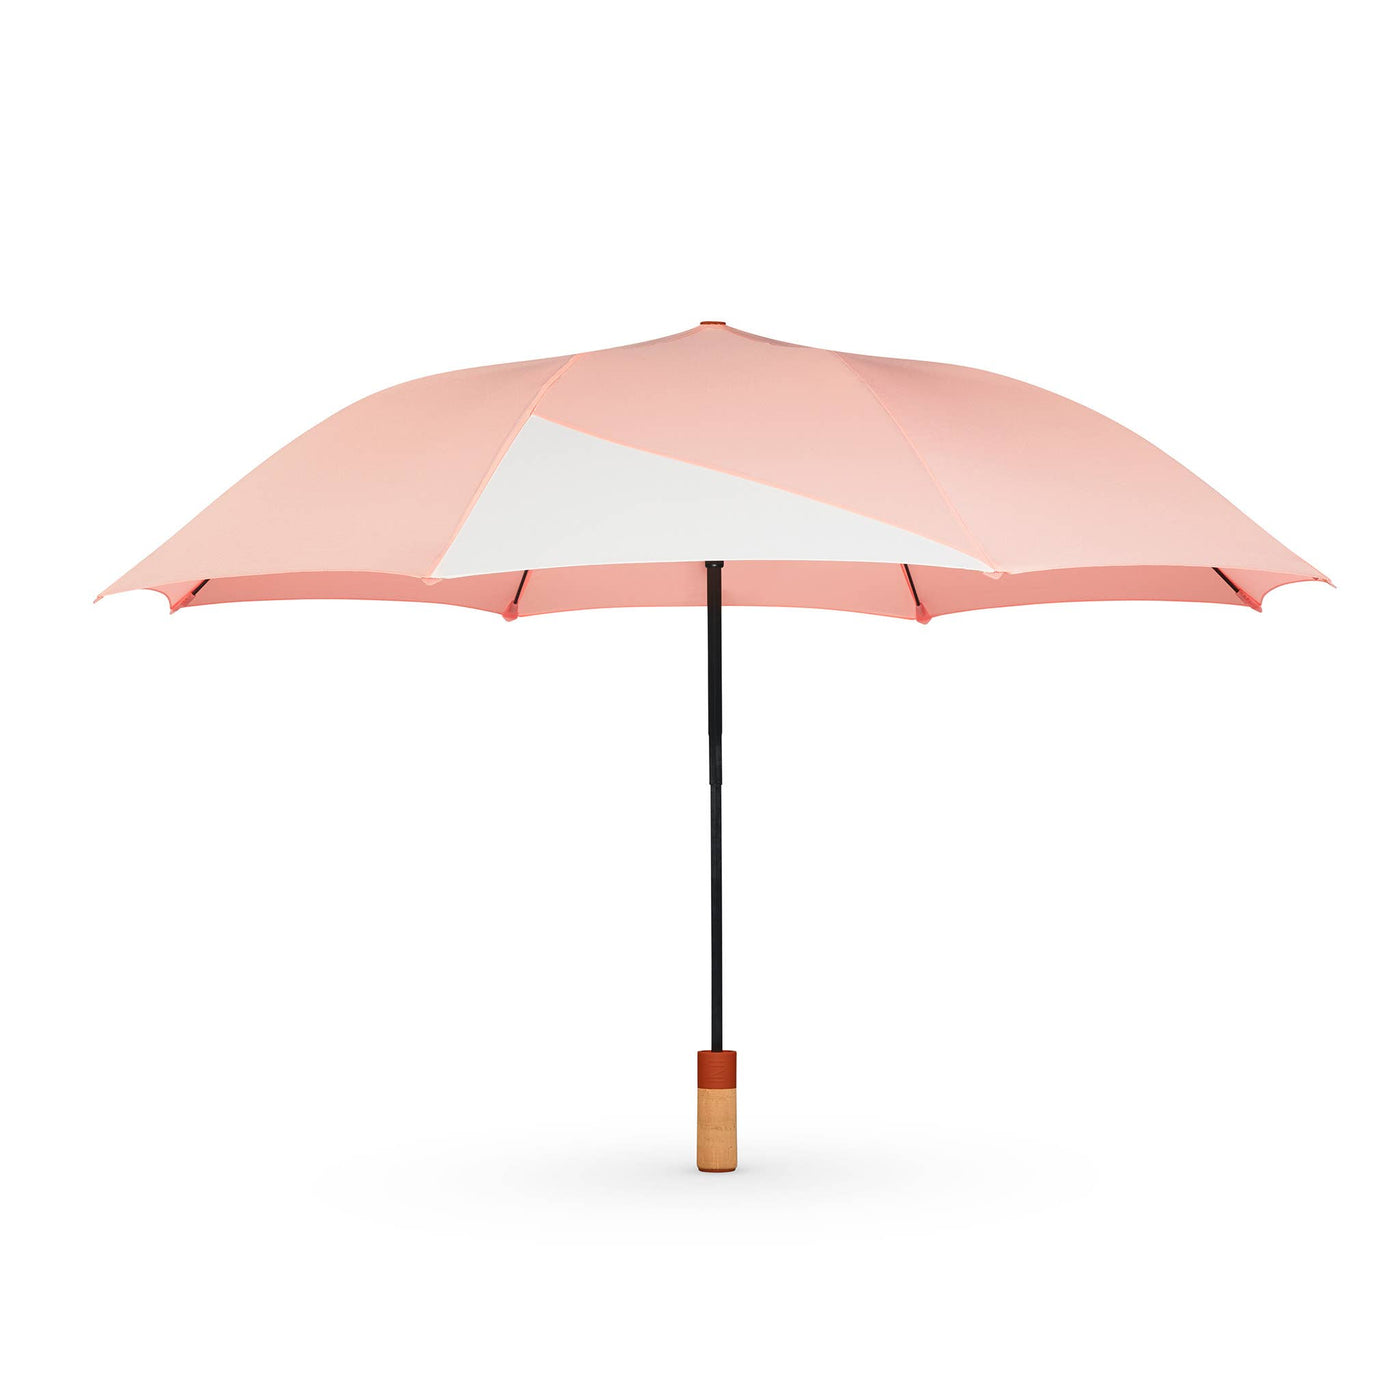 The Small Umbrella